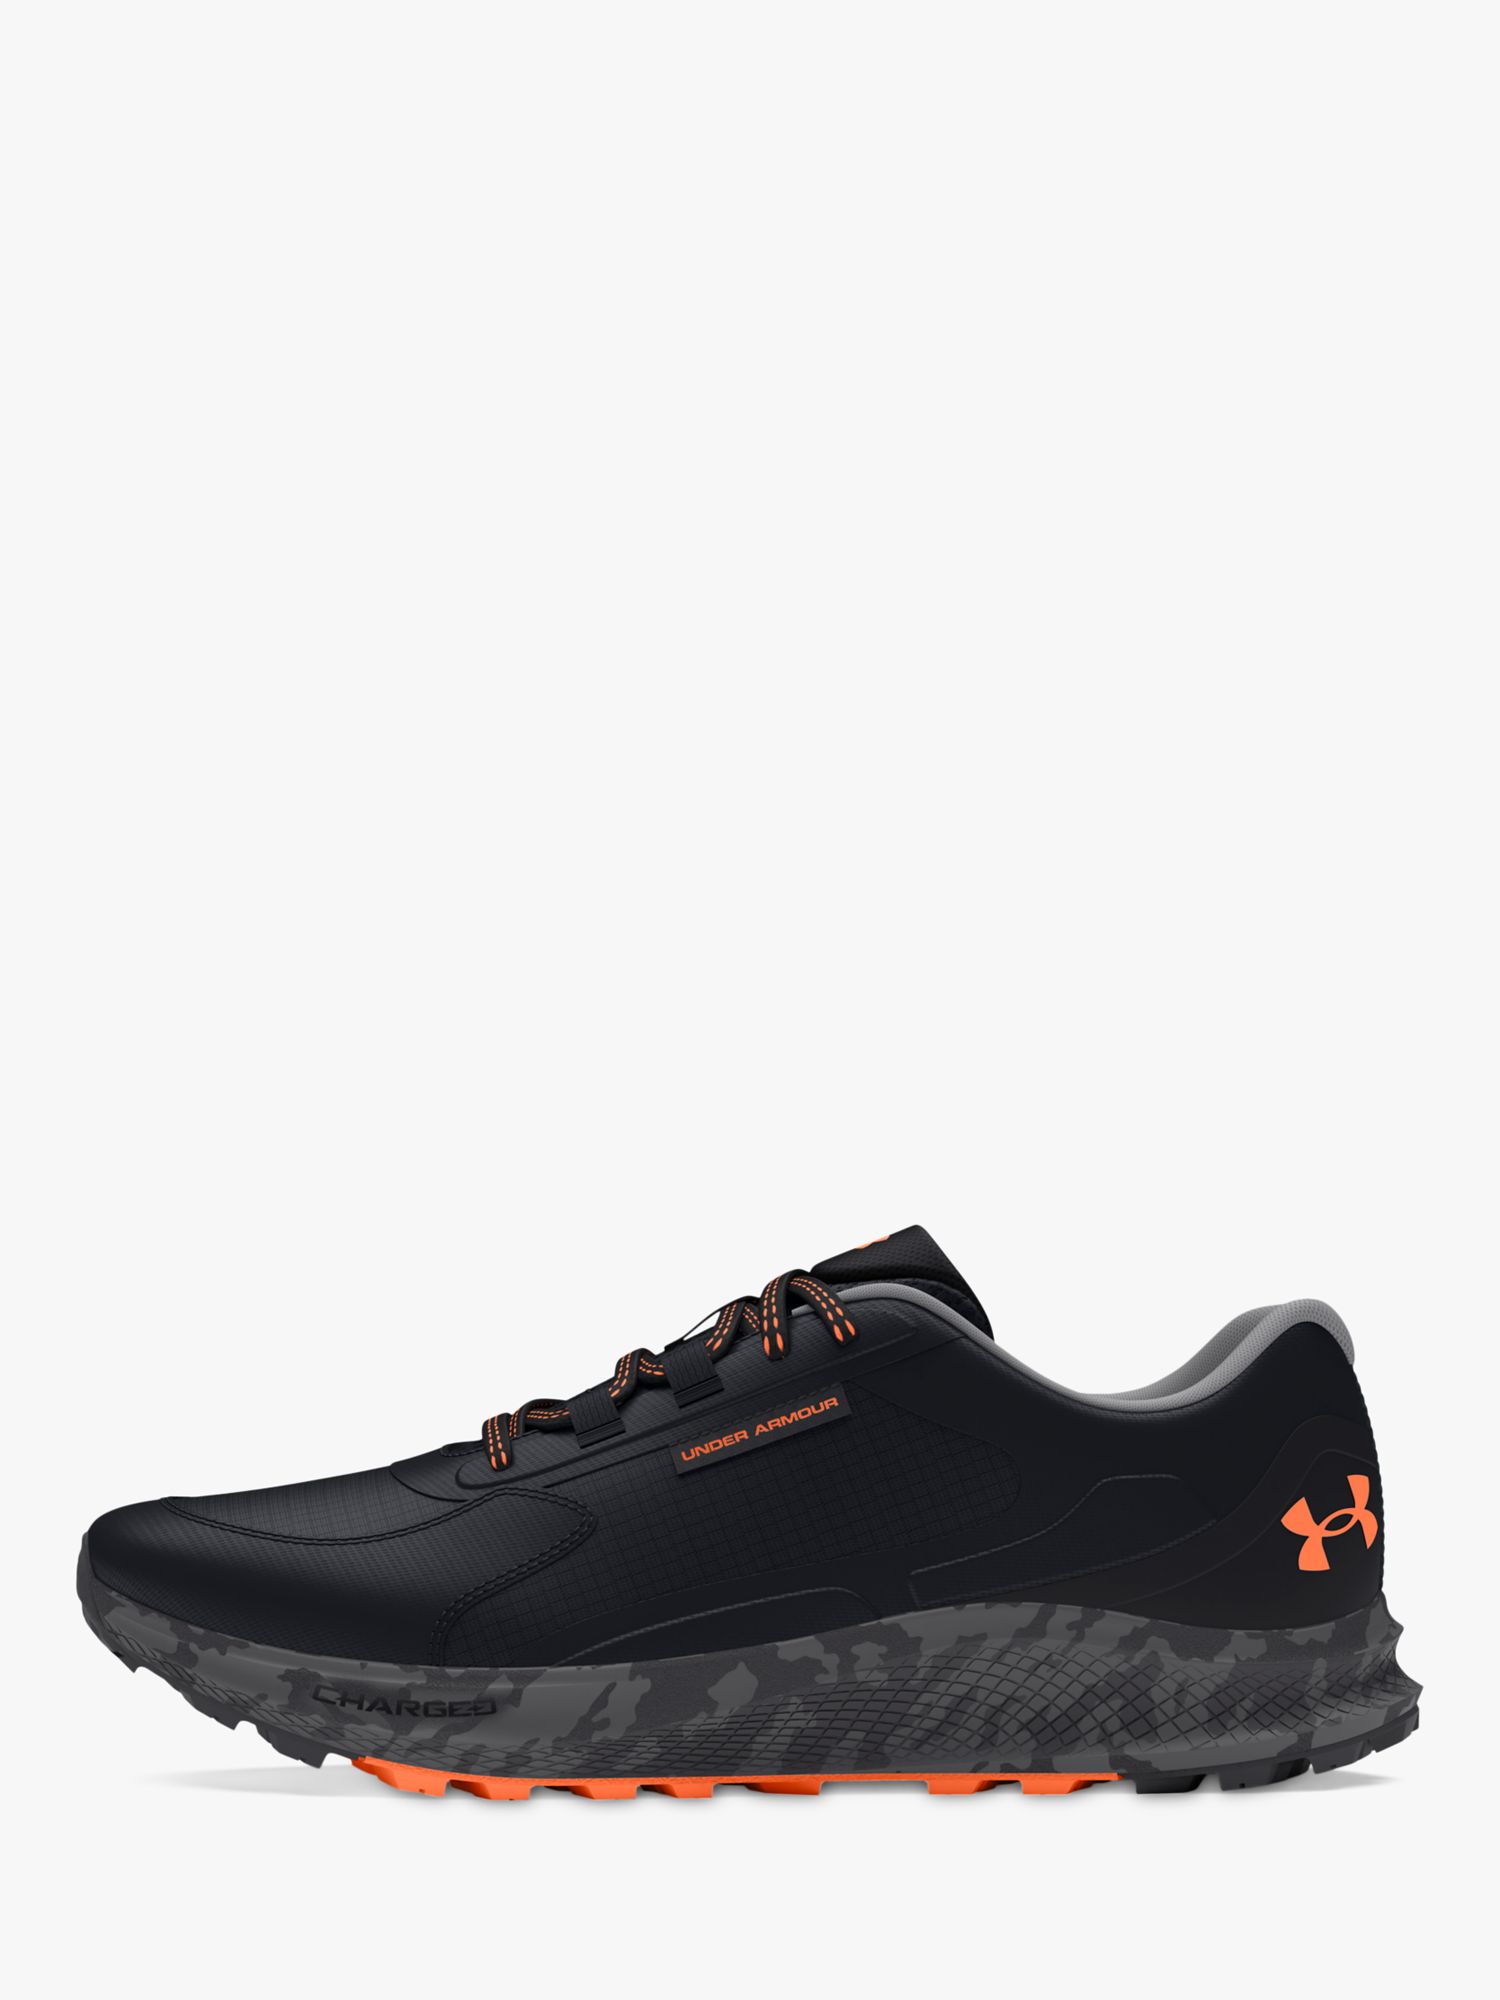 Under Armour Bandit Trail 3 Men's Running Shoes, Black/Orange Blast, 10